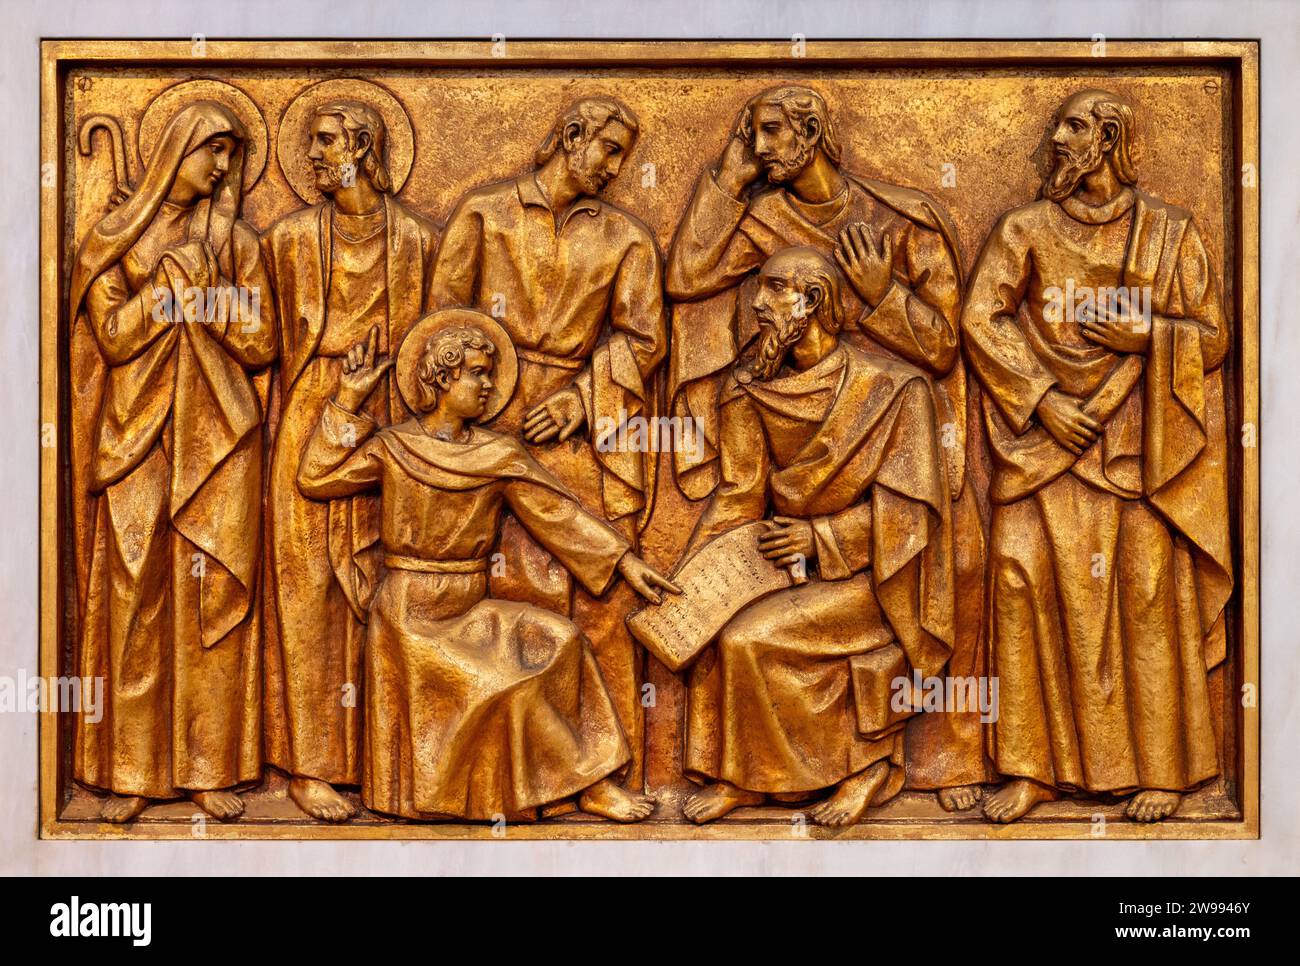 Die Entdeckung Jesu im Tempel – Fünftes freudiges Geheimnis. Eine Reliefskulptur in der Basilika unserer Lieben Frau vom Rosenkranz von Fatima in Fatima, Portugal. Stockfoto